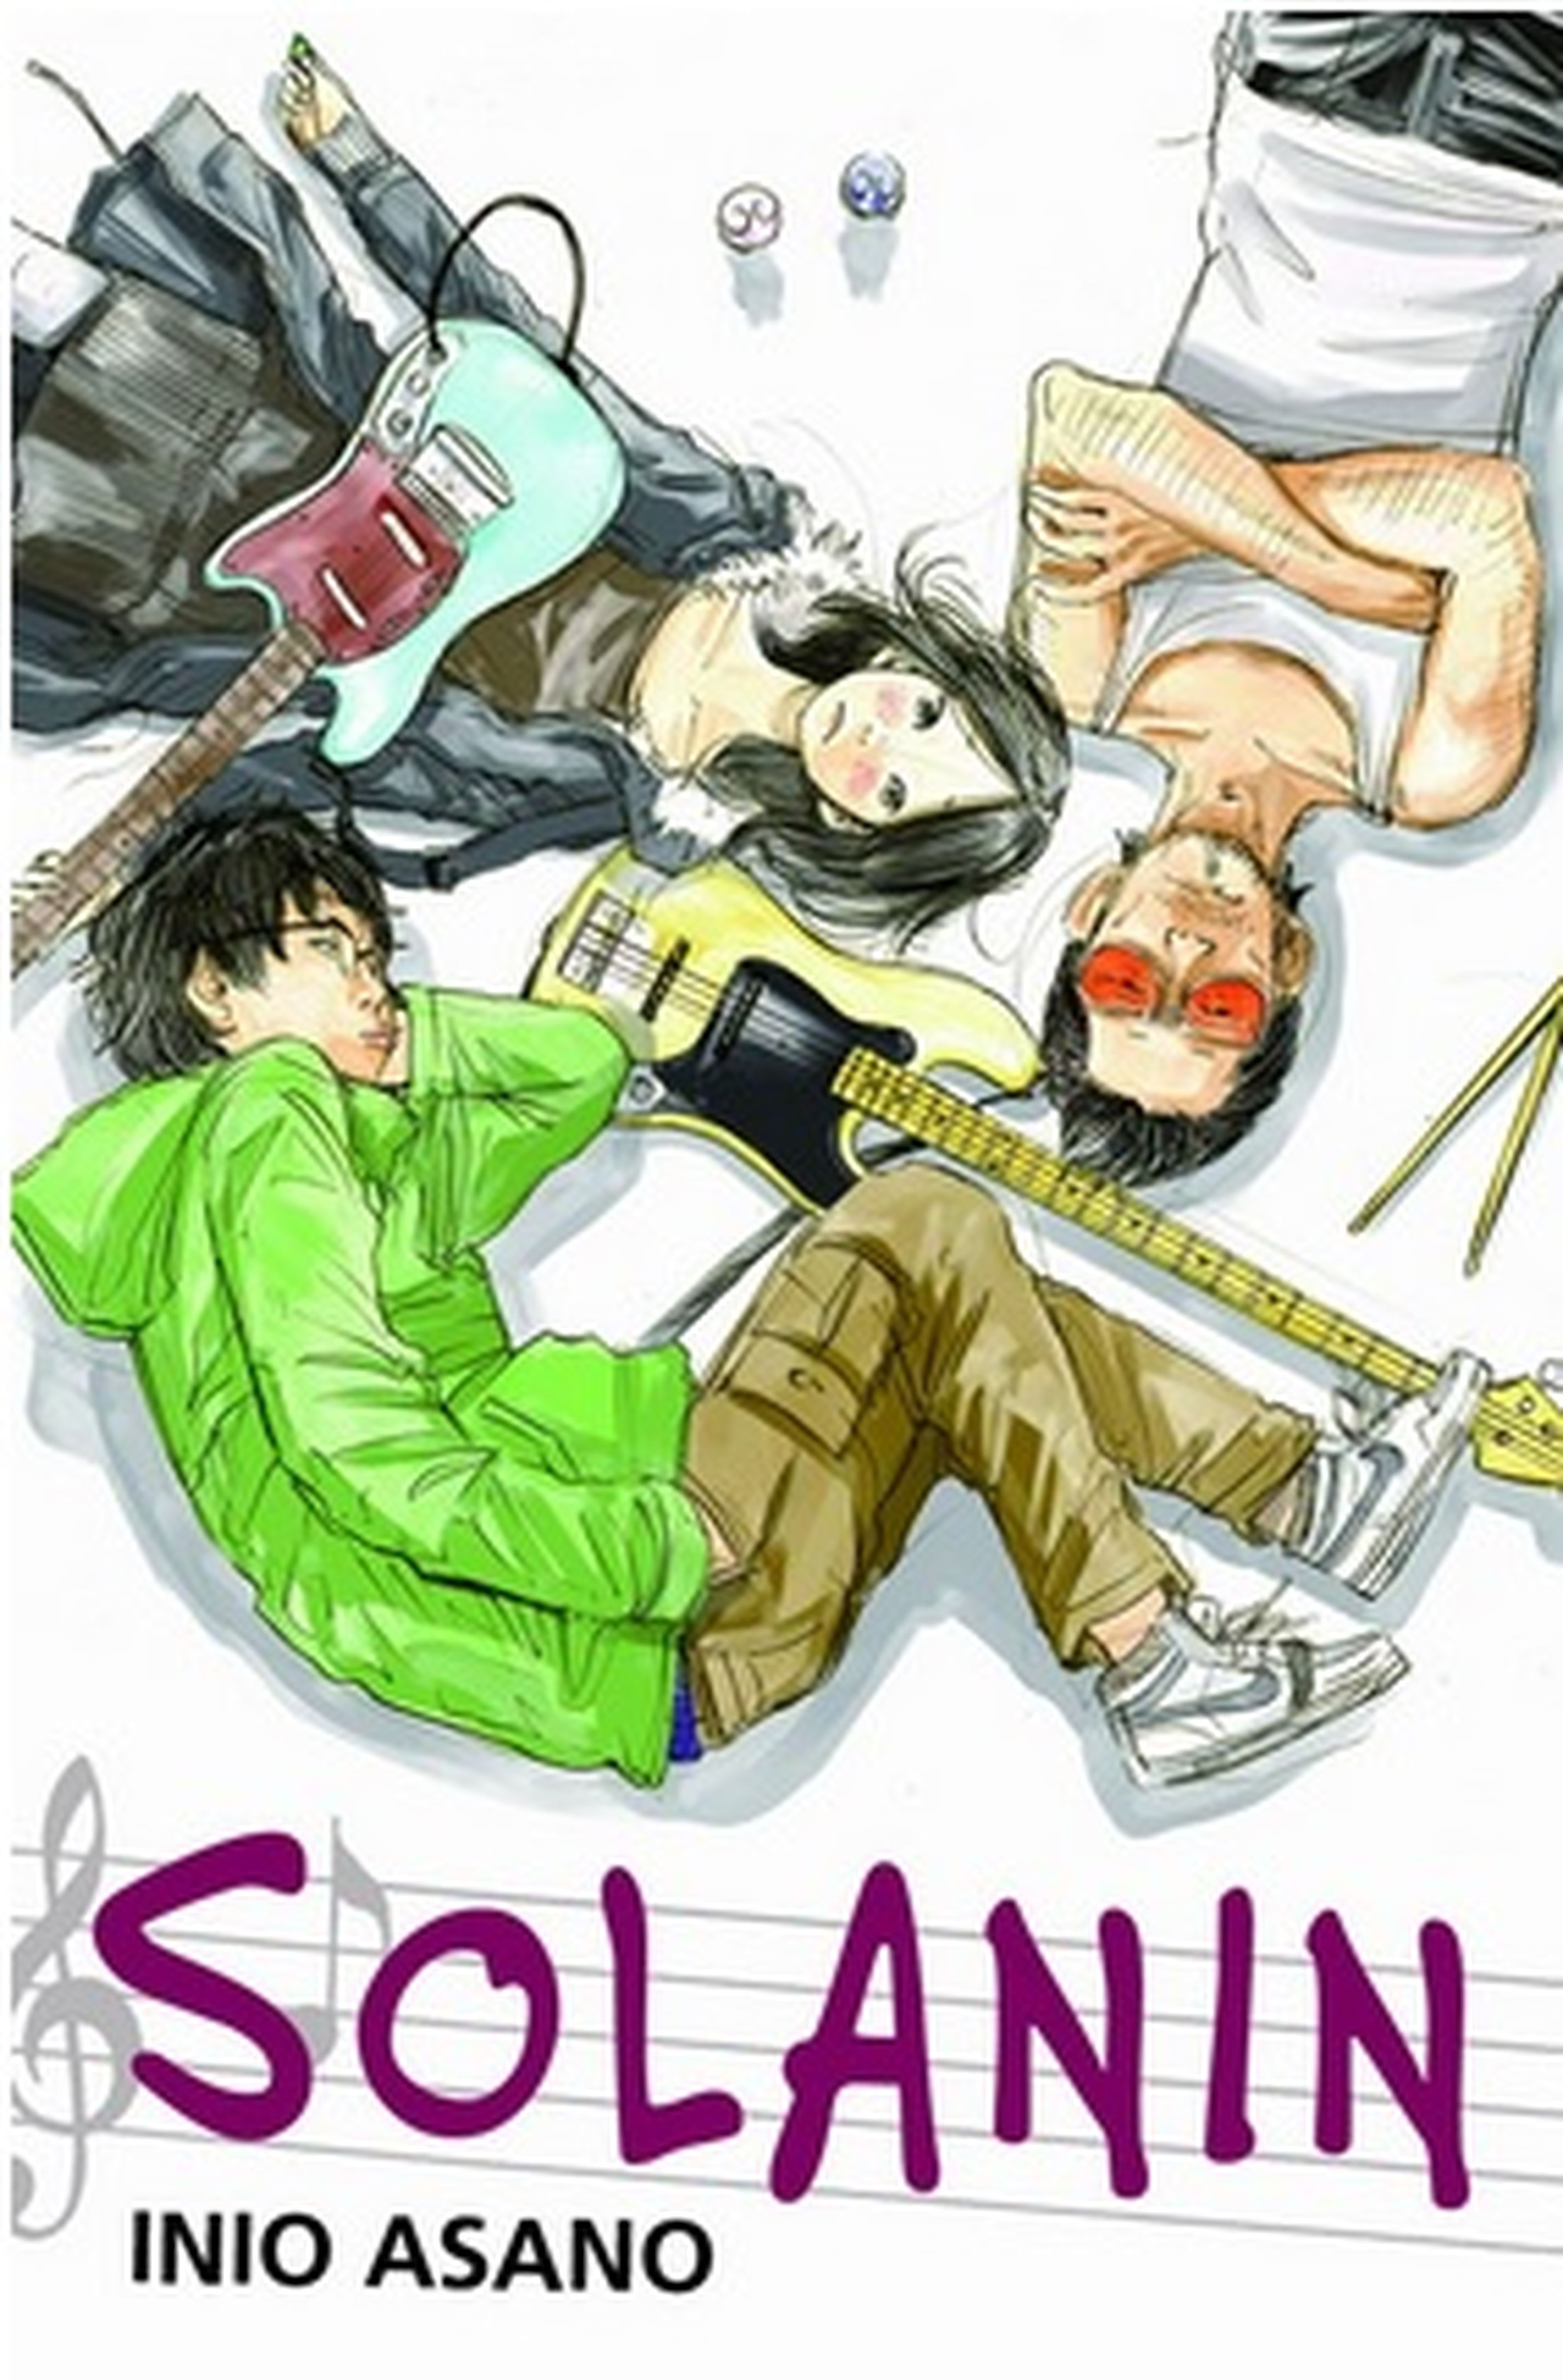 El manga SOLANIN, licenciado en España